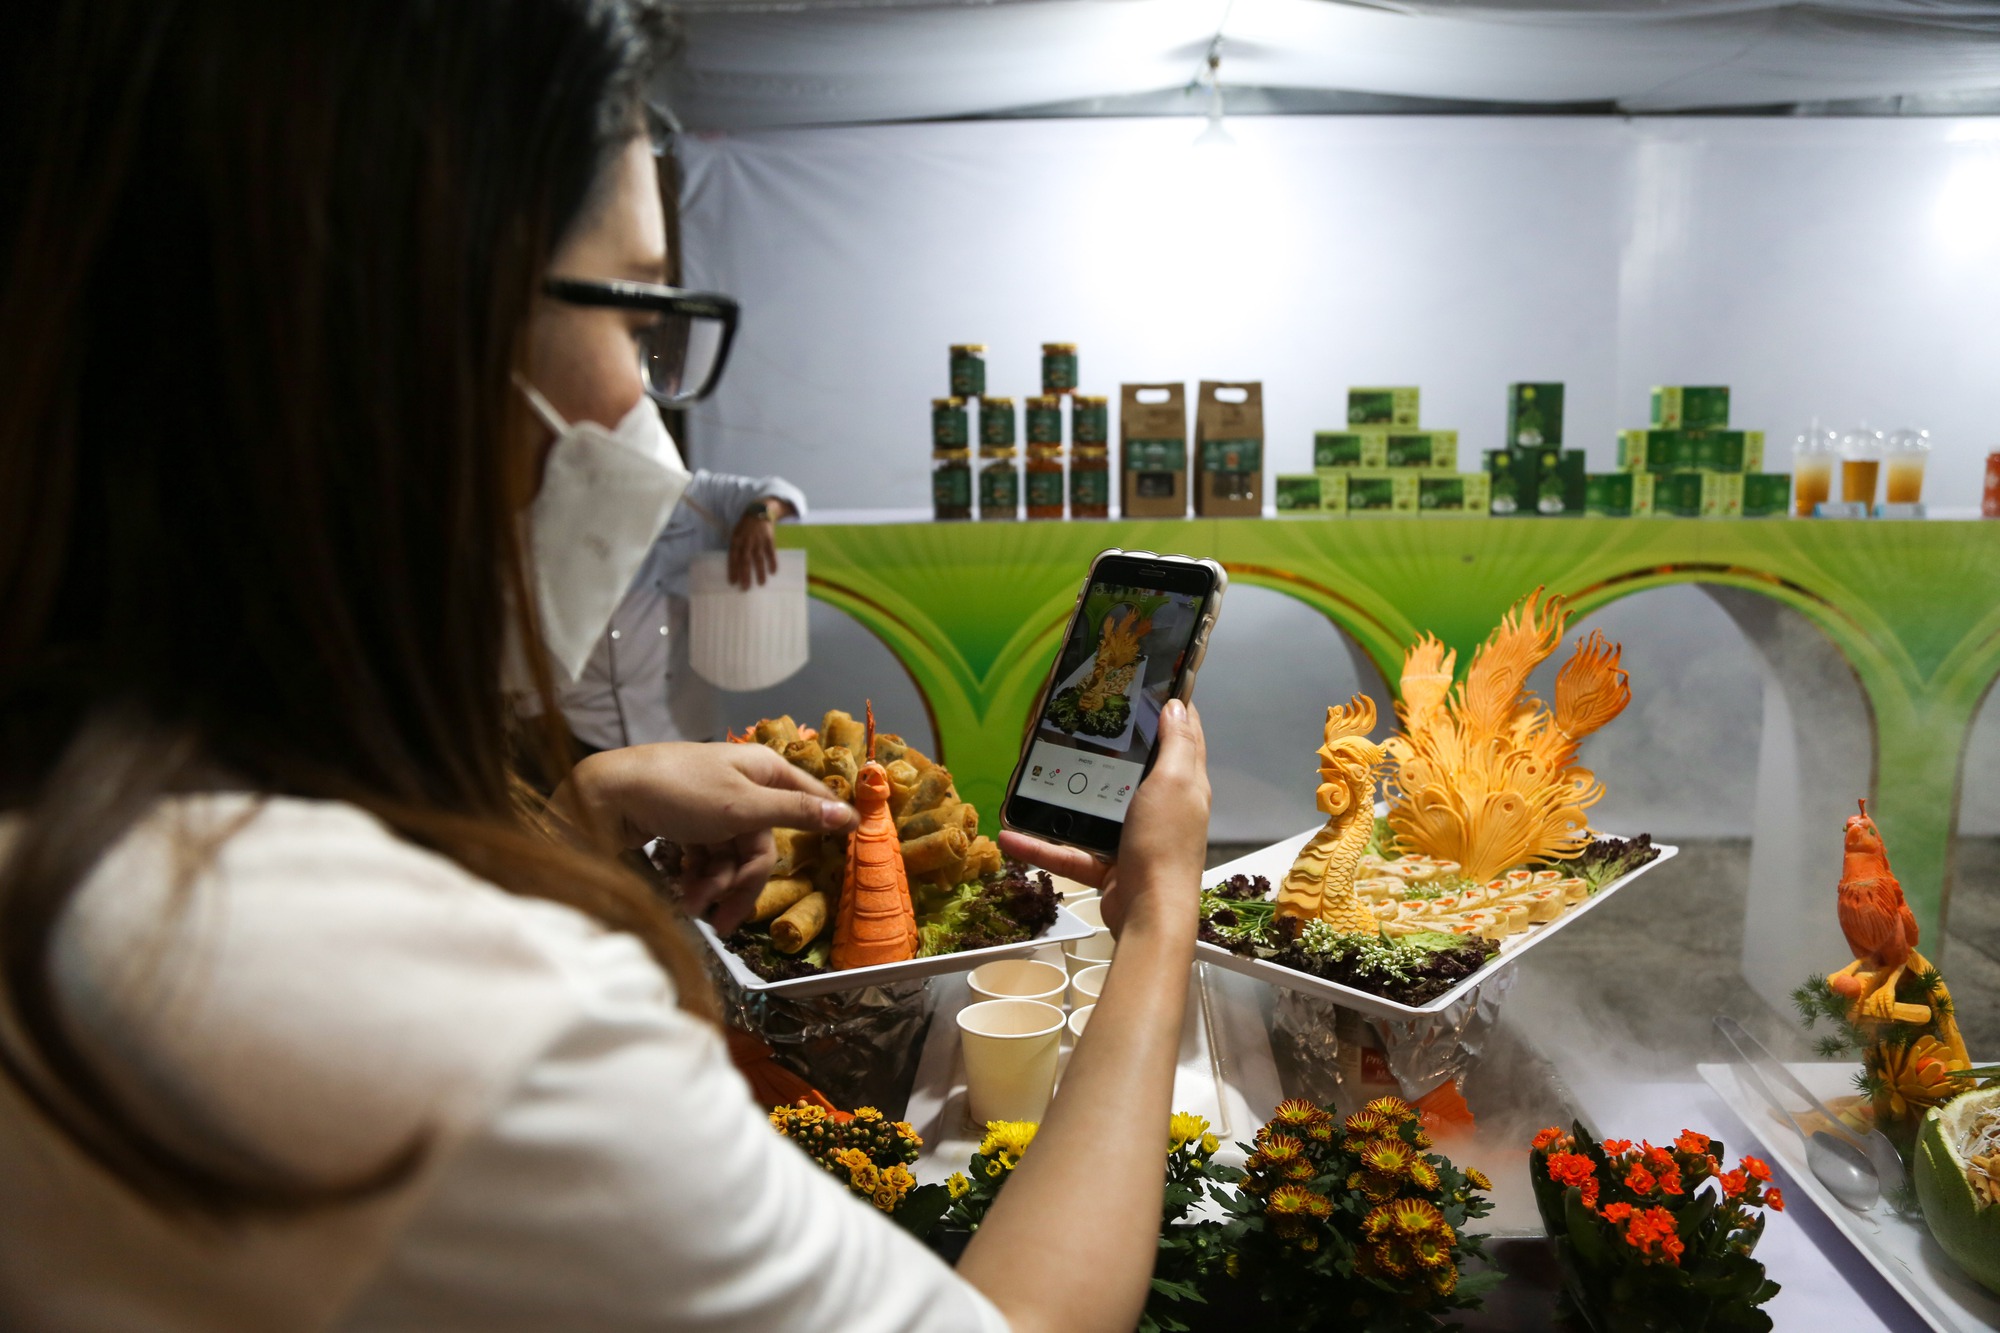 Ngắm vẻ đẹp món chay tại lễ hội nghệ thuật chế biến món ăn chay Tây Ninh - Ảnh 10.